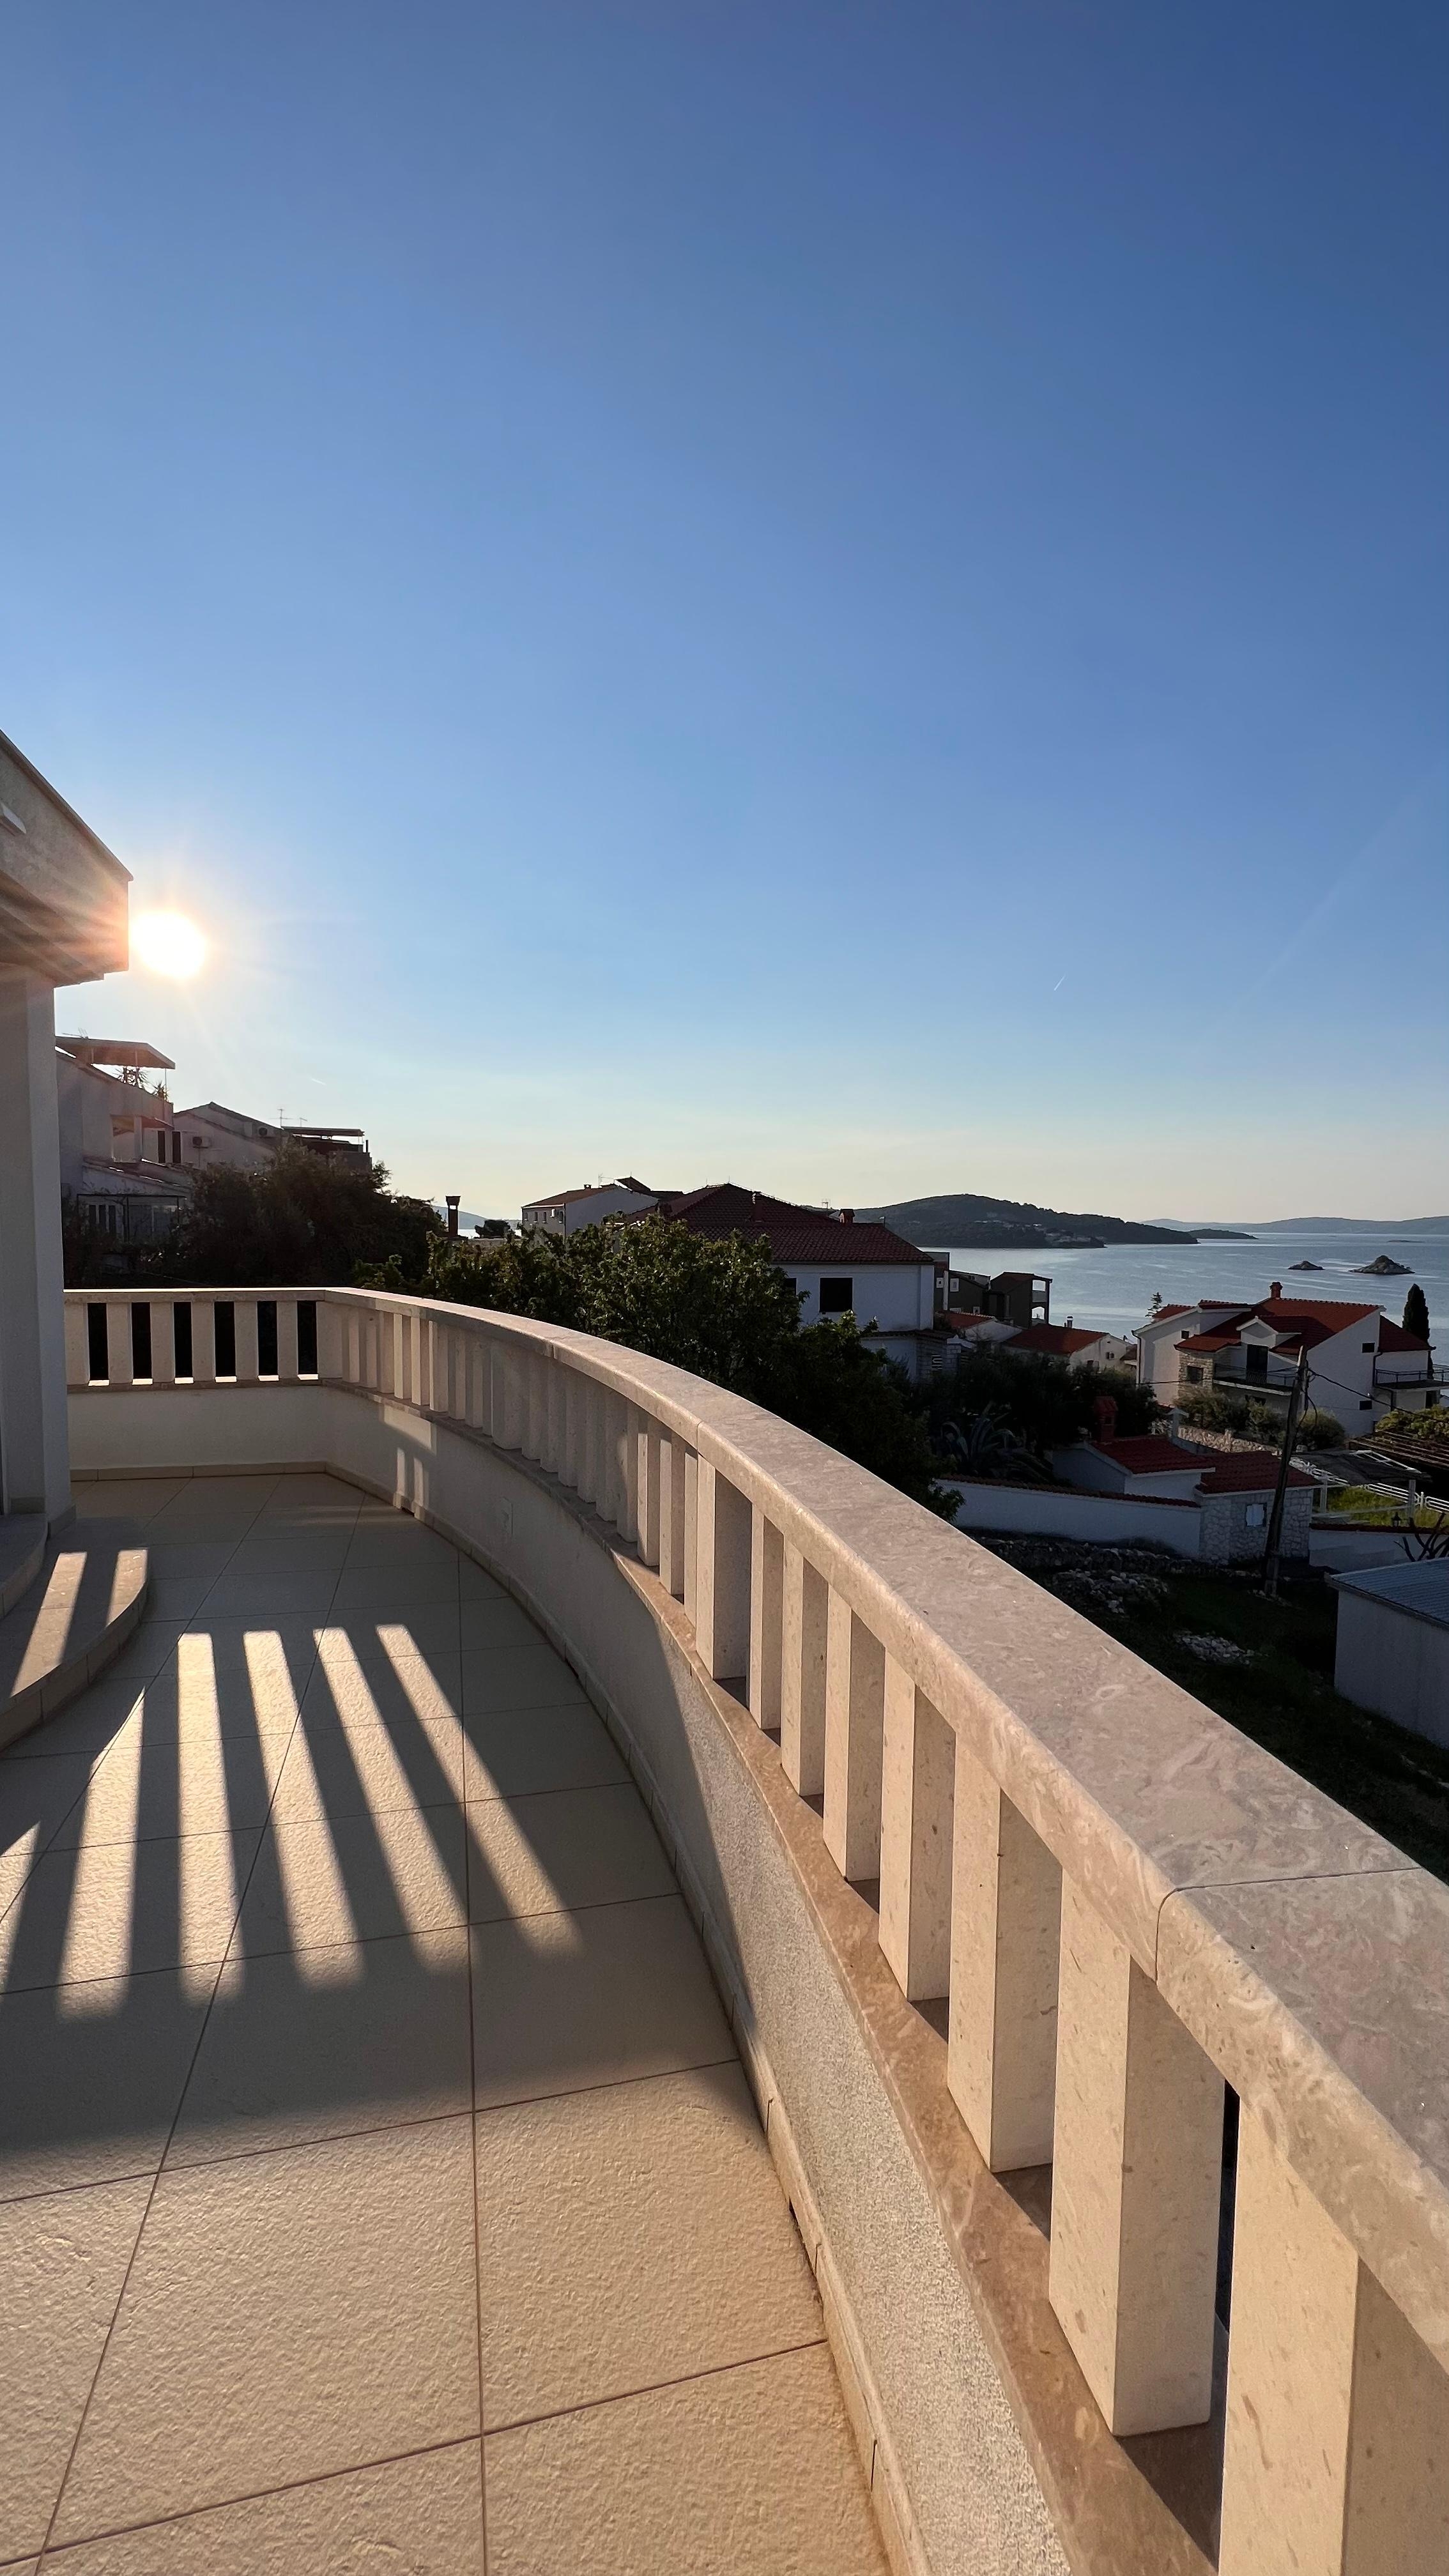 The View @casa__mare 
Das ist der Ausblick auf die wunderschönen Inseln Kroatiens. 
#solebich #casamare #couchliebt